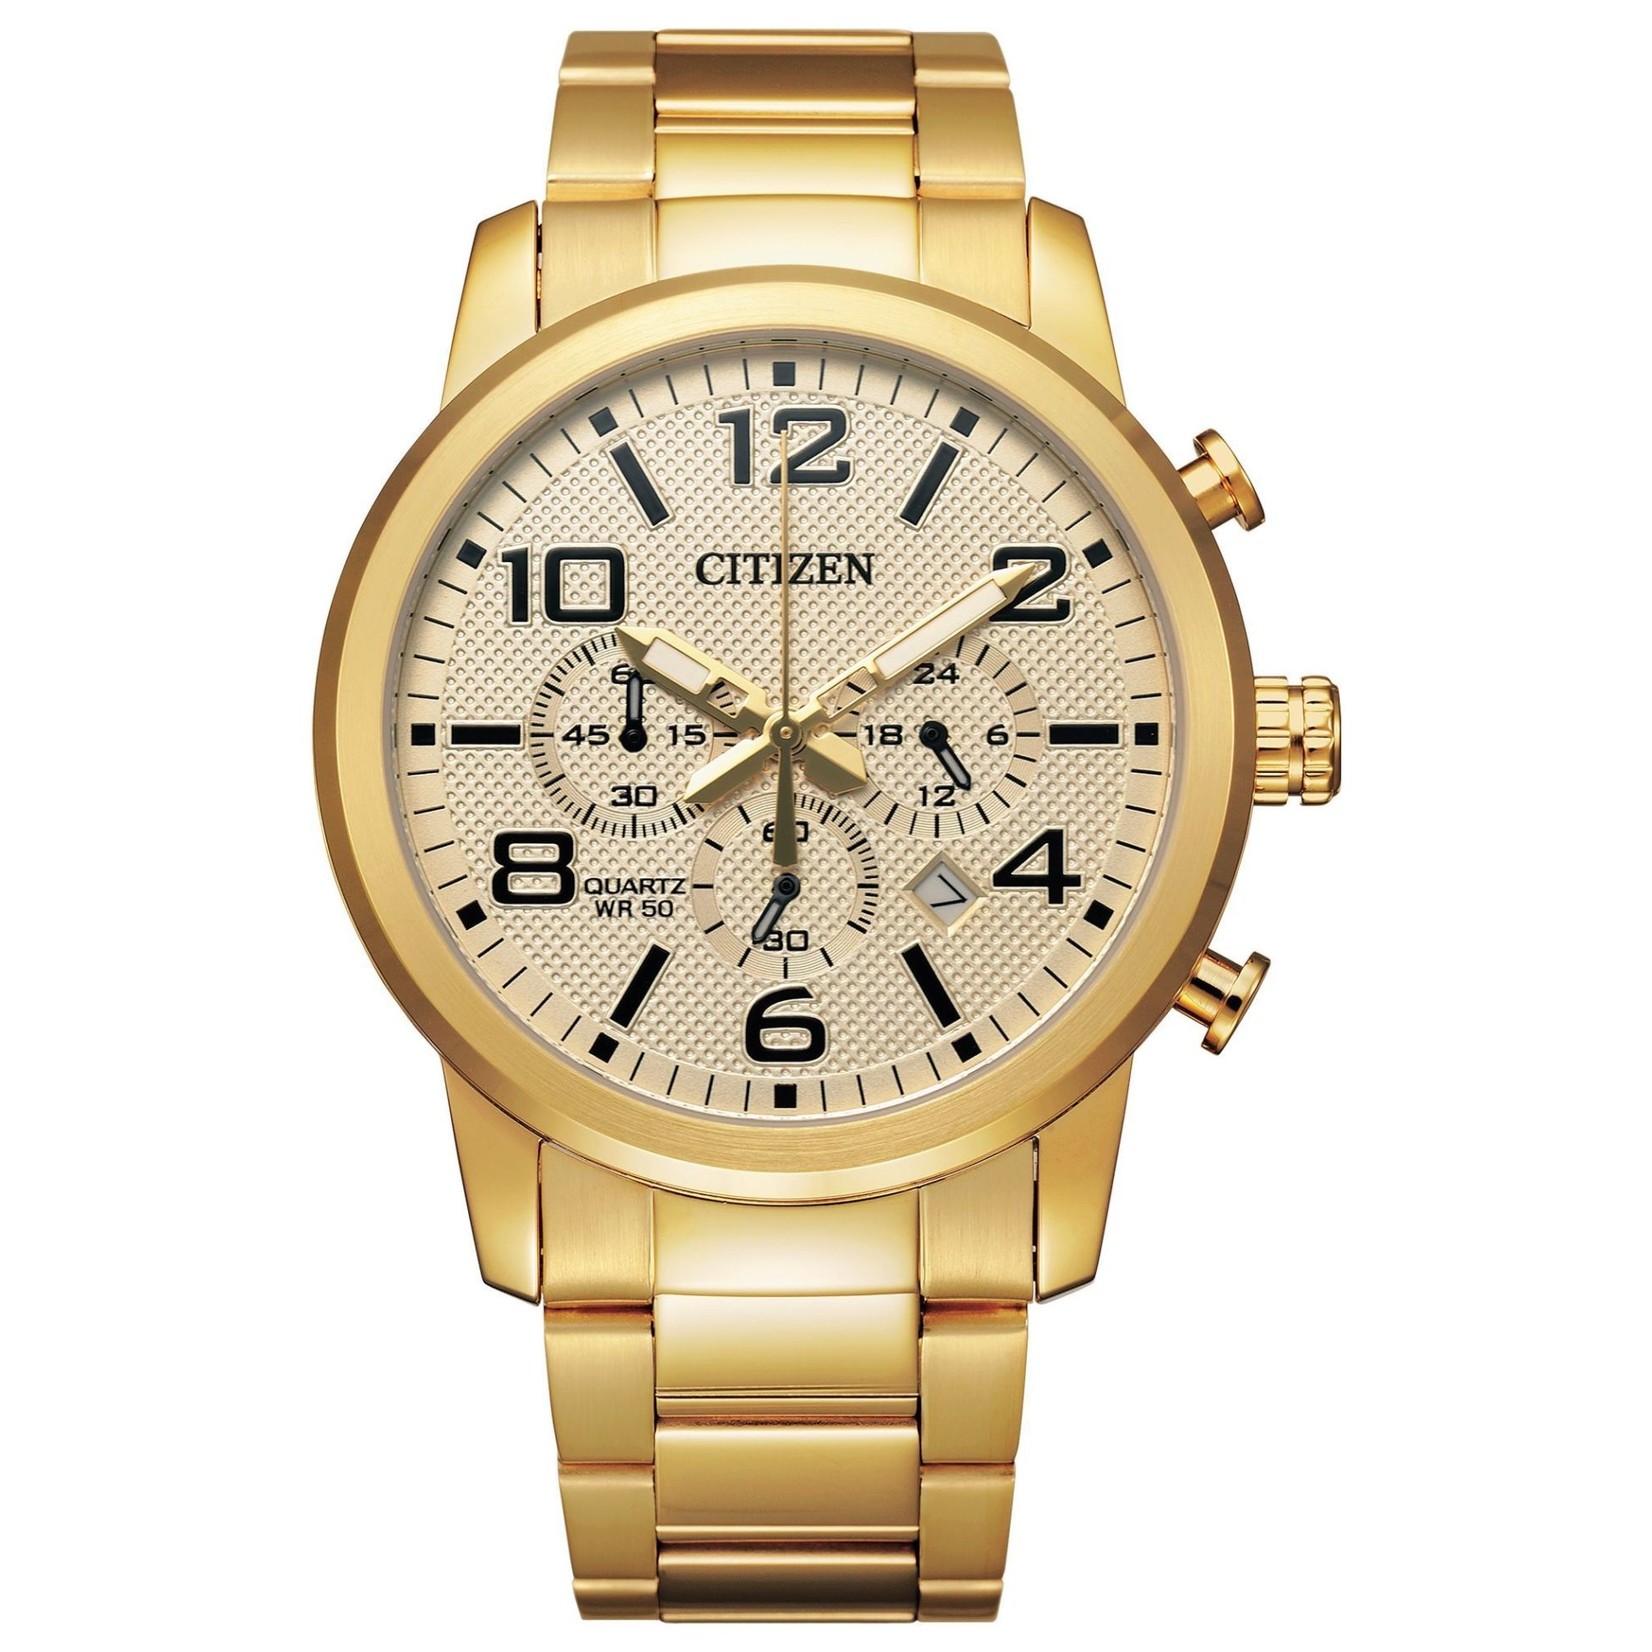 CITIZEN WATCH COMPANY Citizen Quartz Gold Tone Chronograph Bracelet Watch w/Date